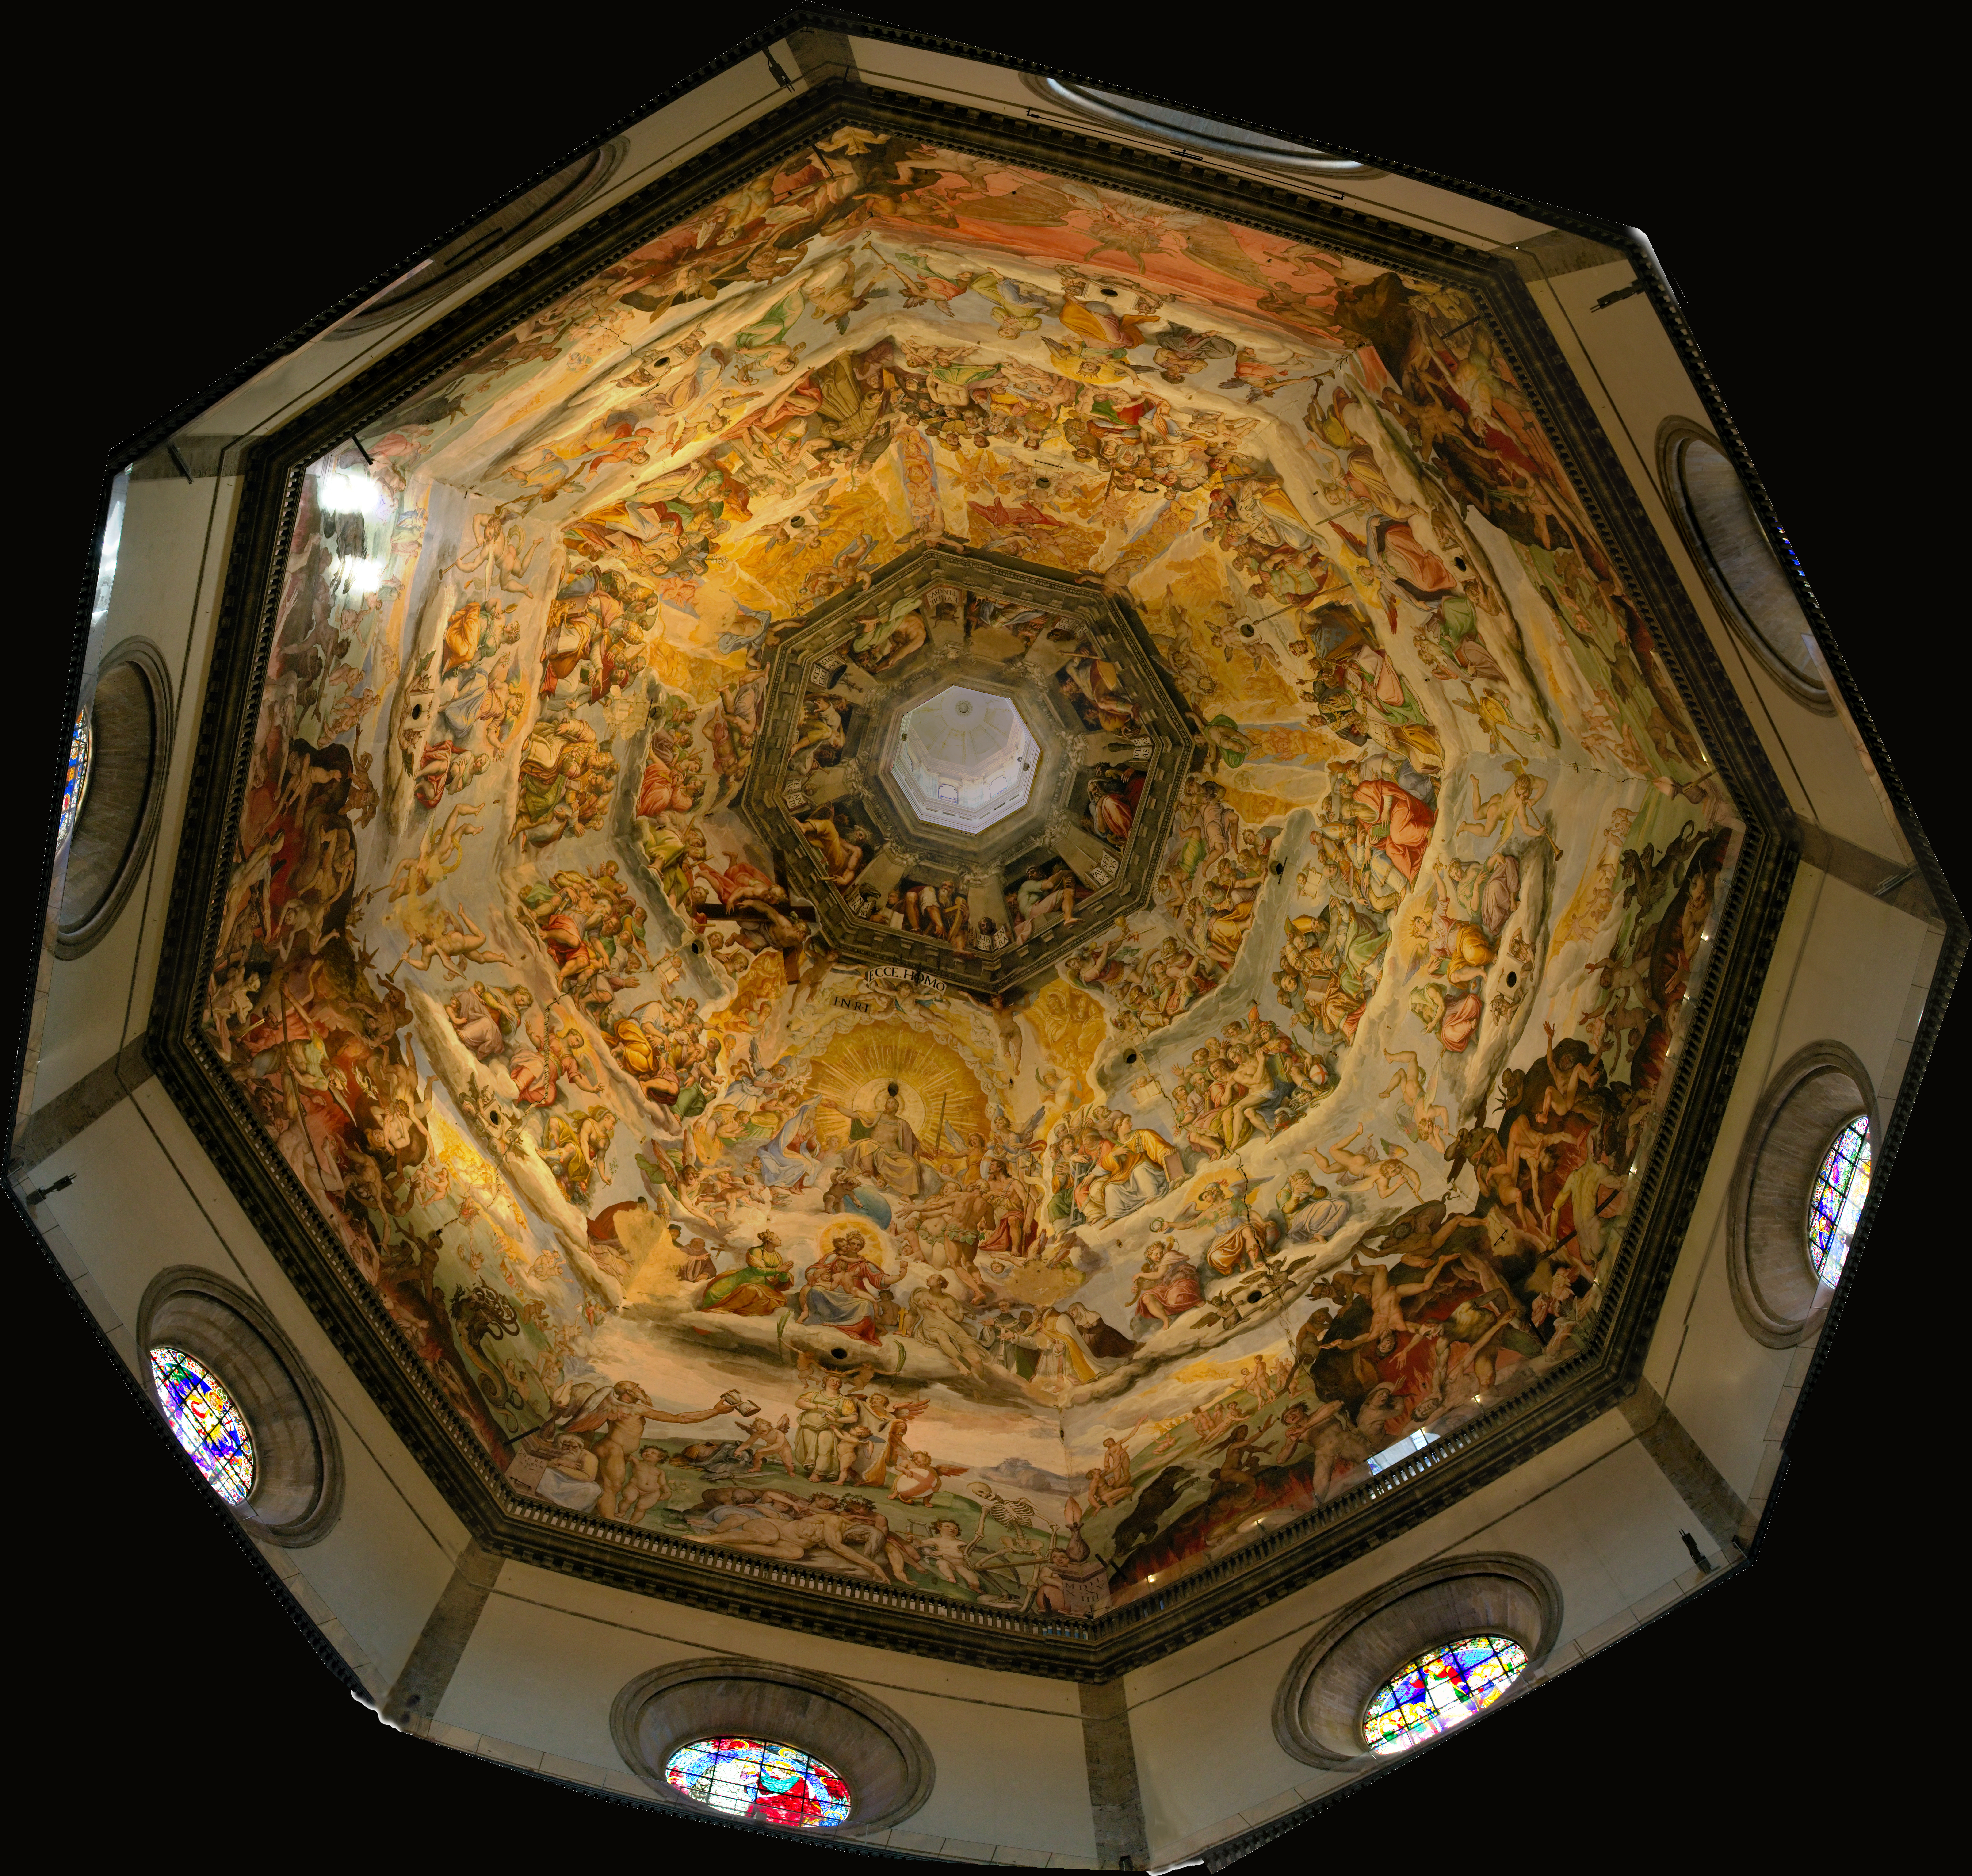 Флорентийский собор внутри